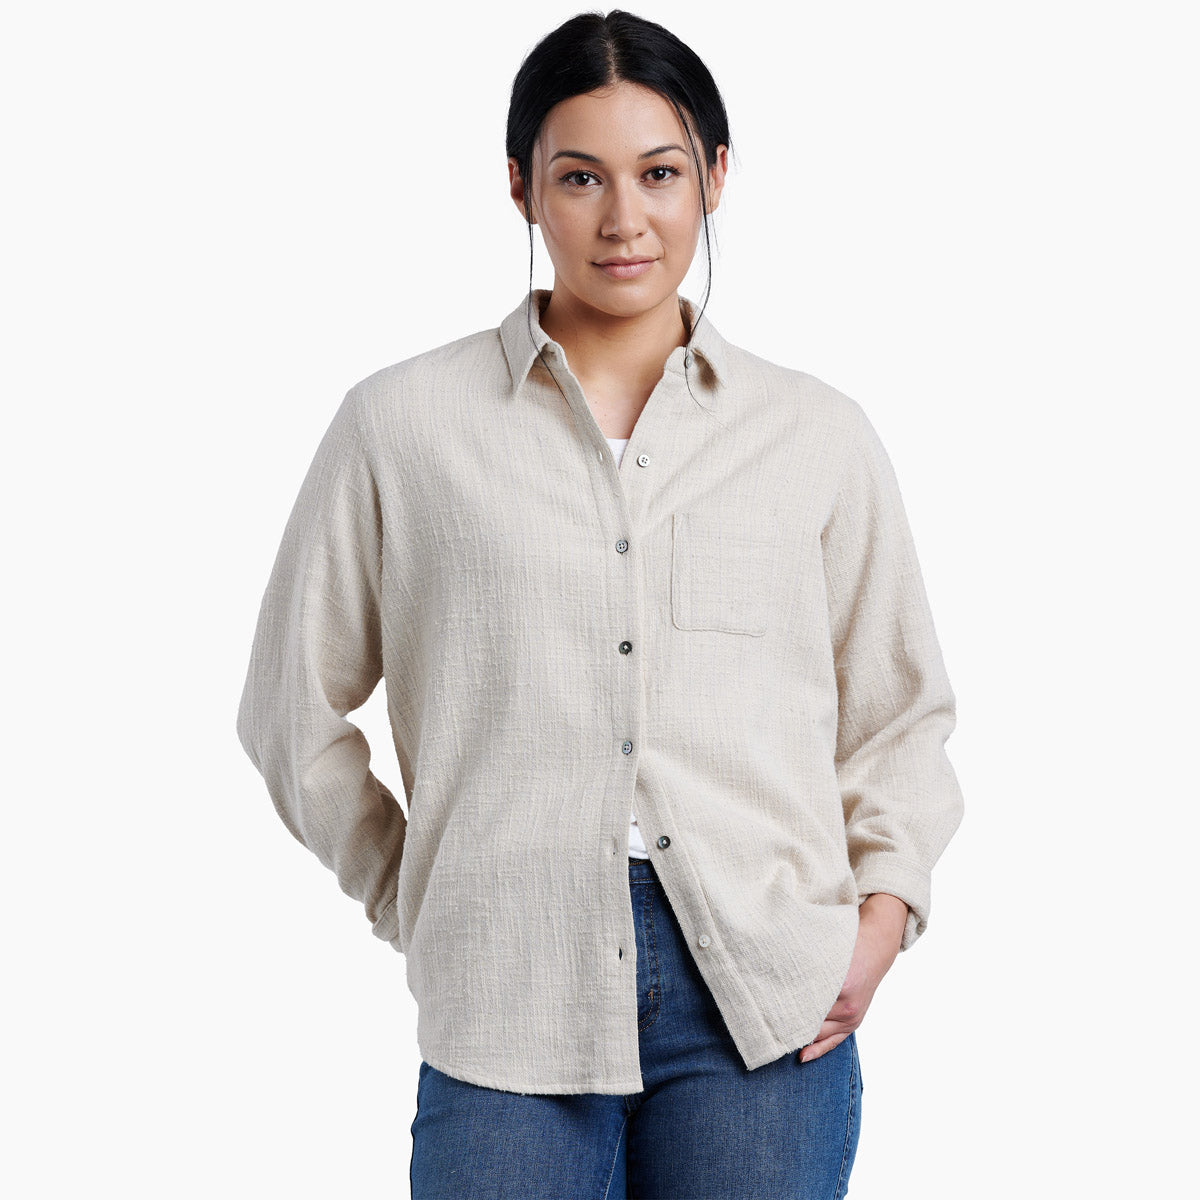 KÜHL Women's Tess™ Flannel Long Sleeve